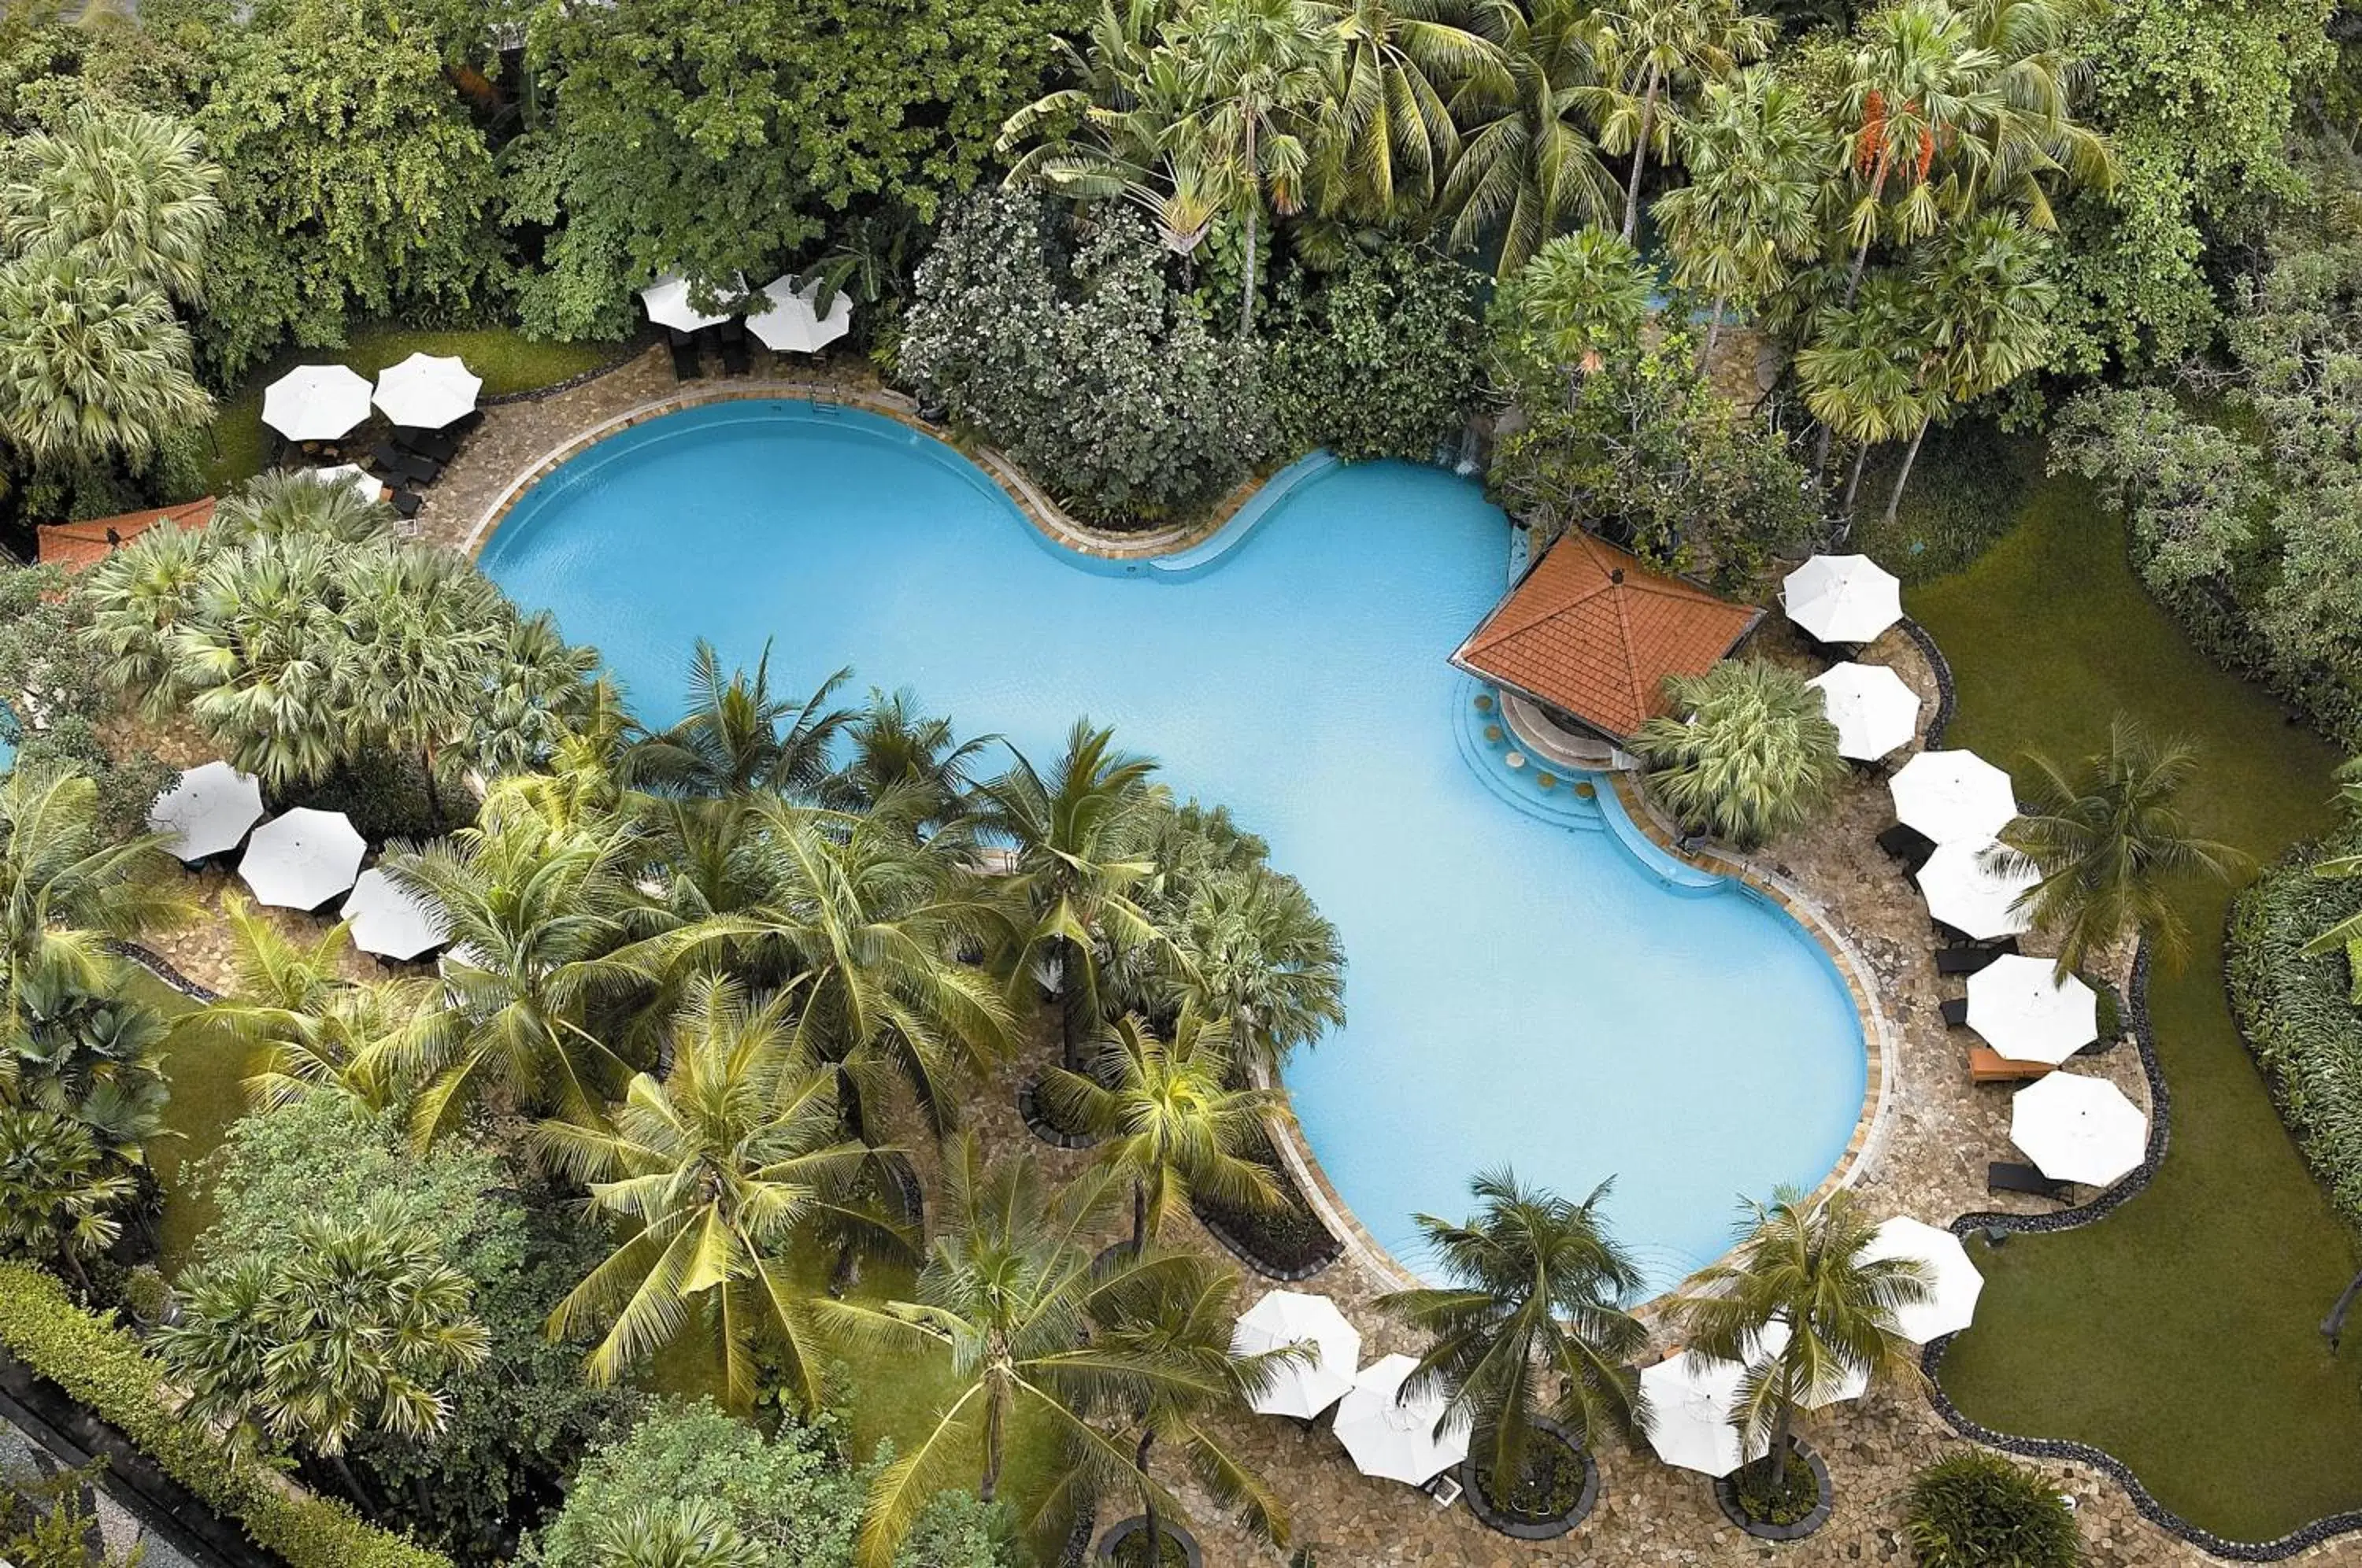 Pool View in Shangri-la Surabaya